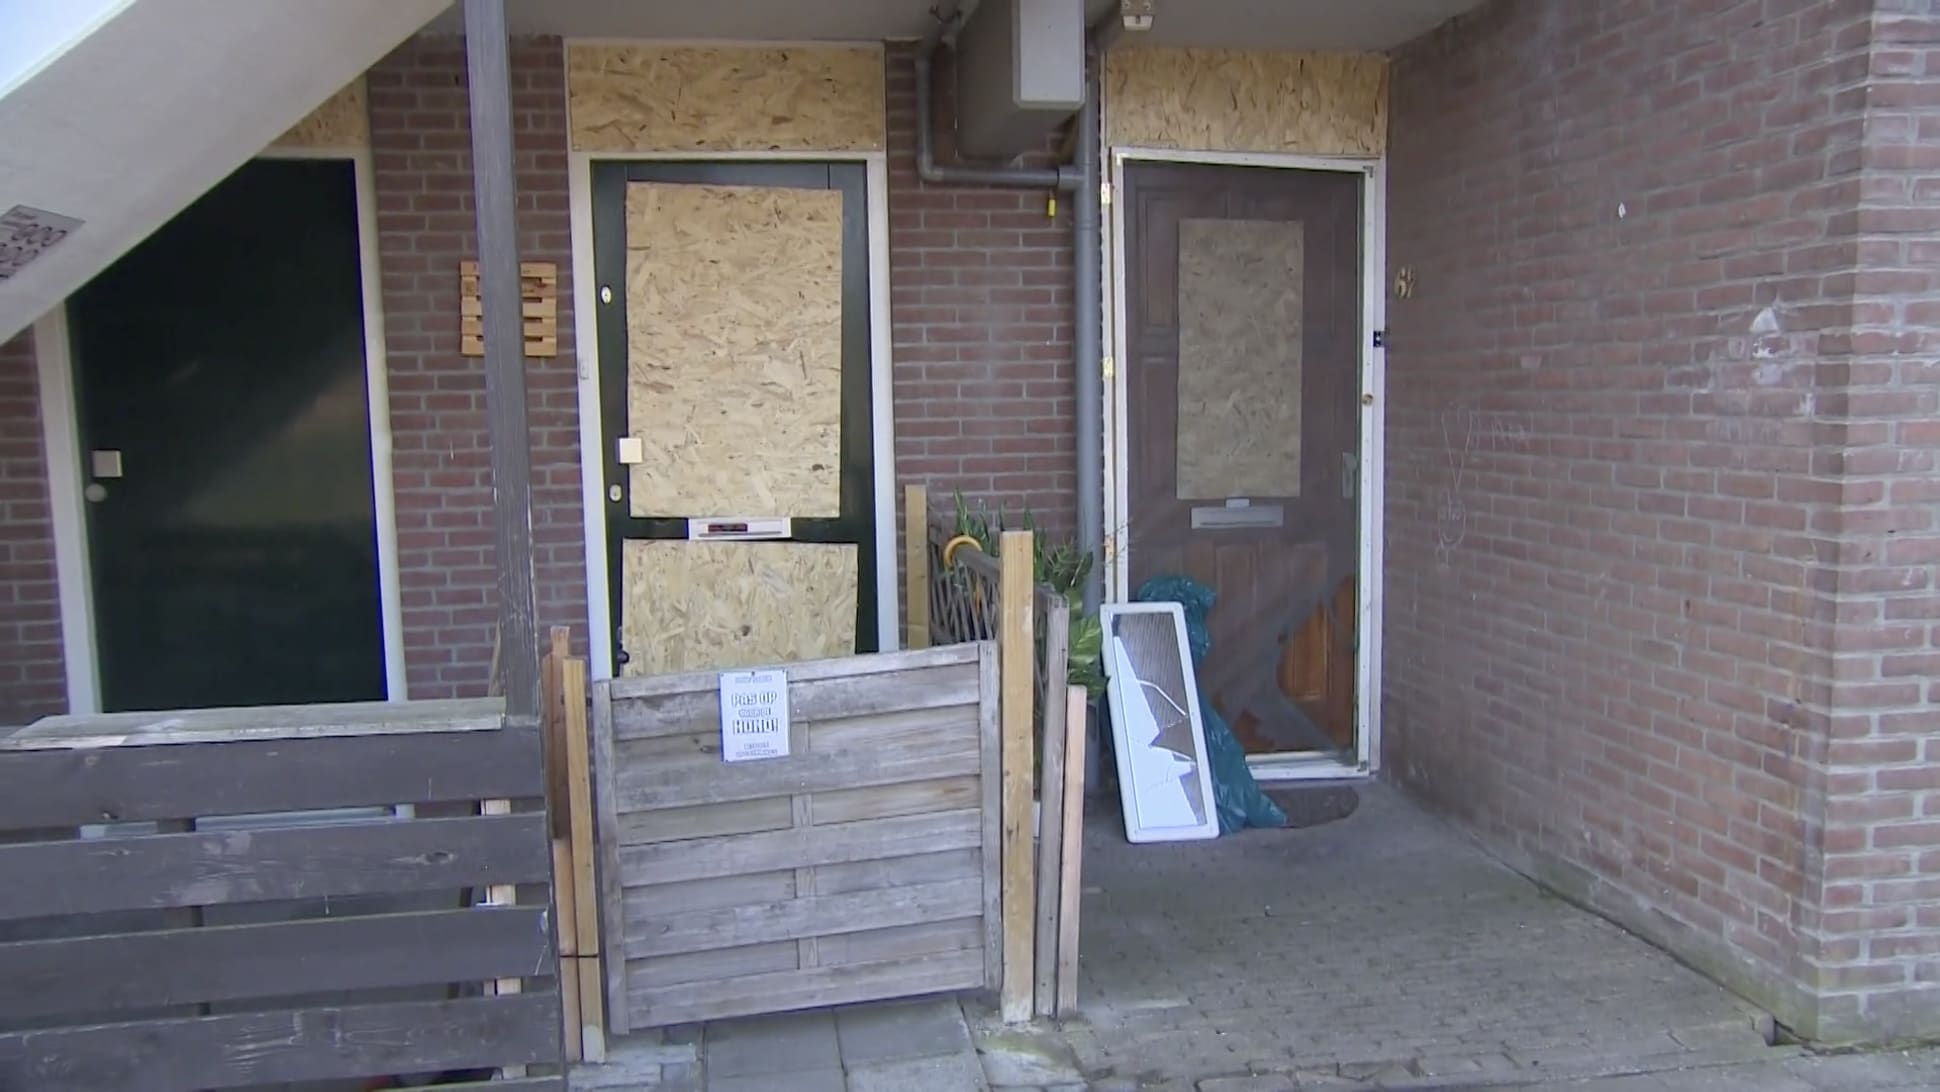 Buurt in Zaandam schrikt wakker van mysterieuze explosie